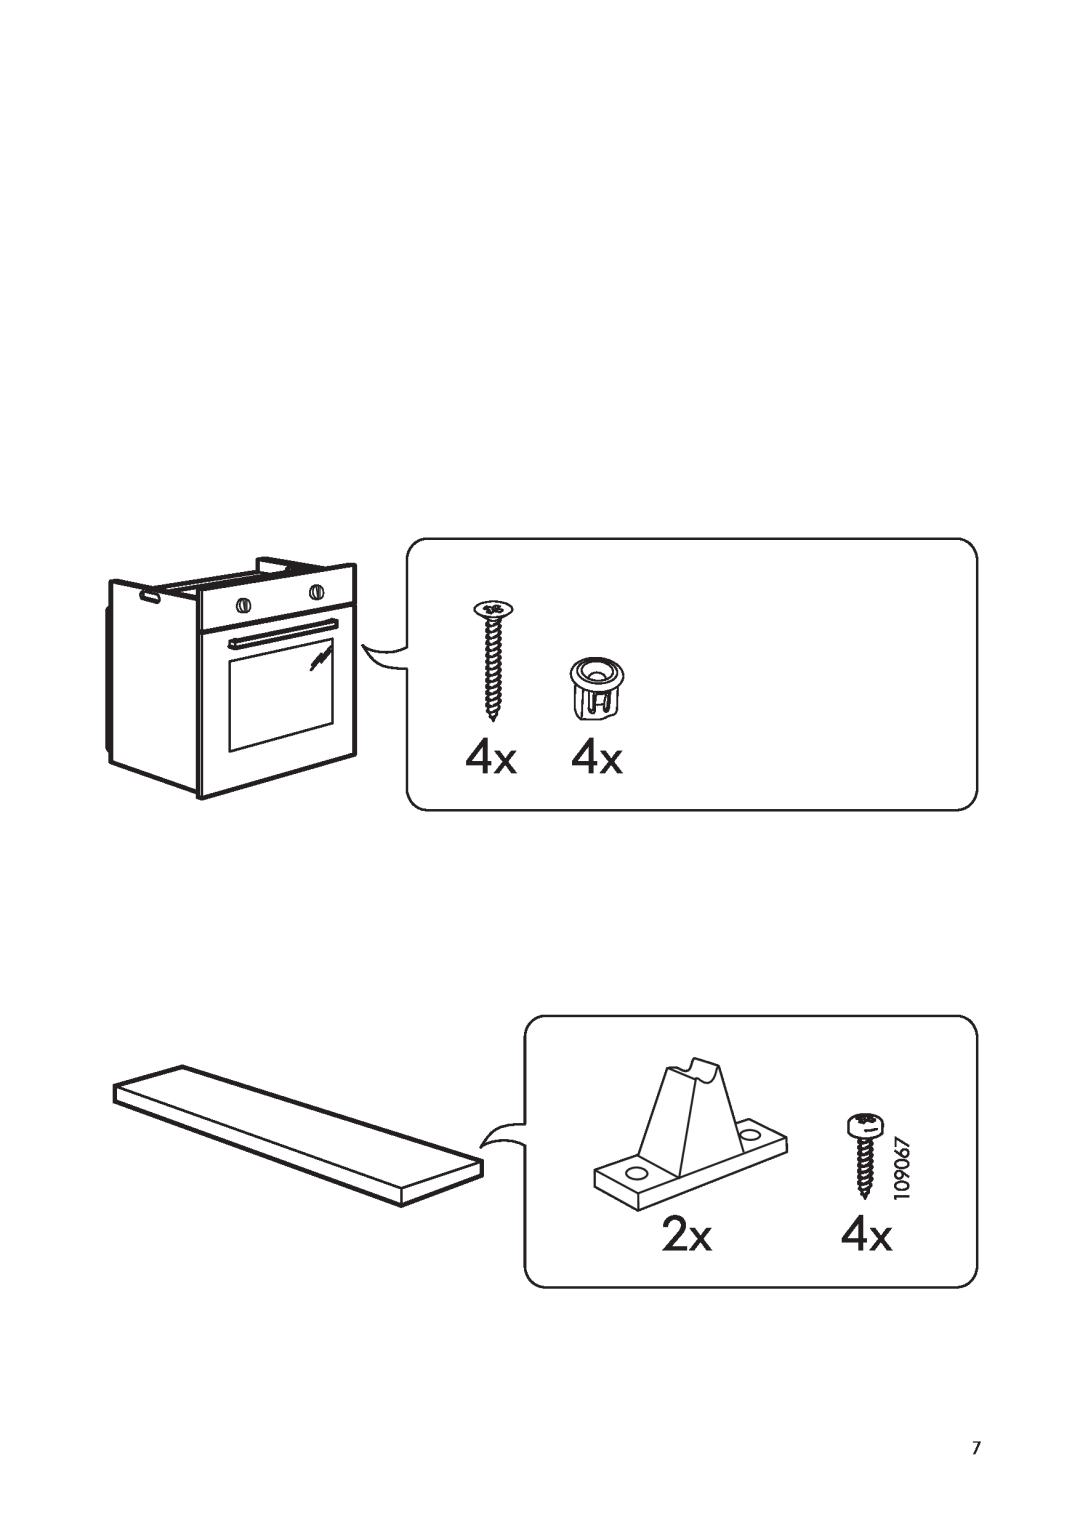 IKEA OV3 manual 4x 2x 